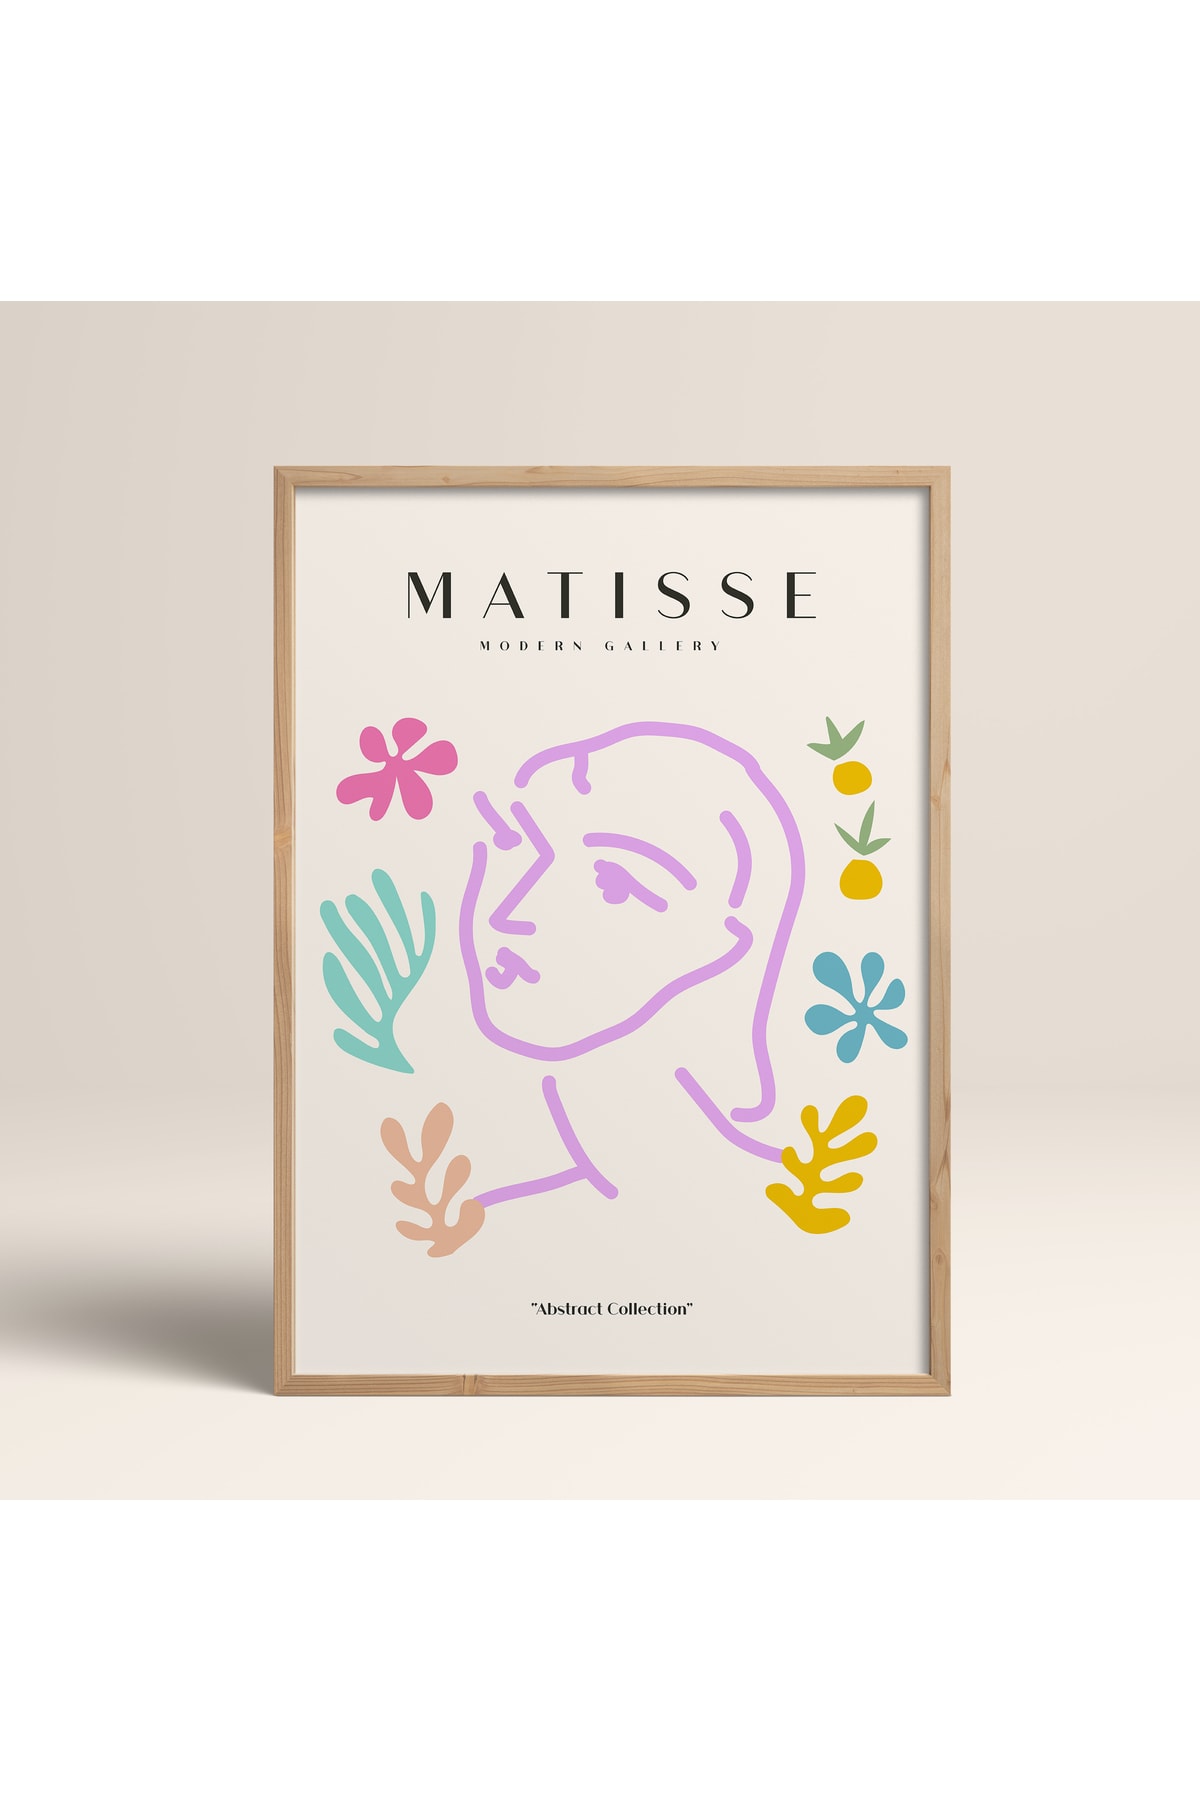 HOMEPACK Ahşap Çerçeveli Soyut Renkli Desenler Matisse Gallery Modern Art Tablo